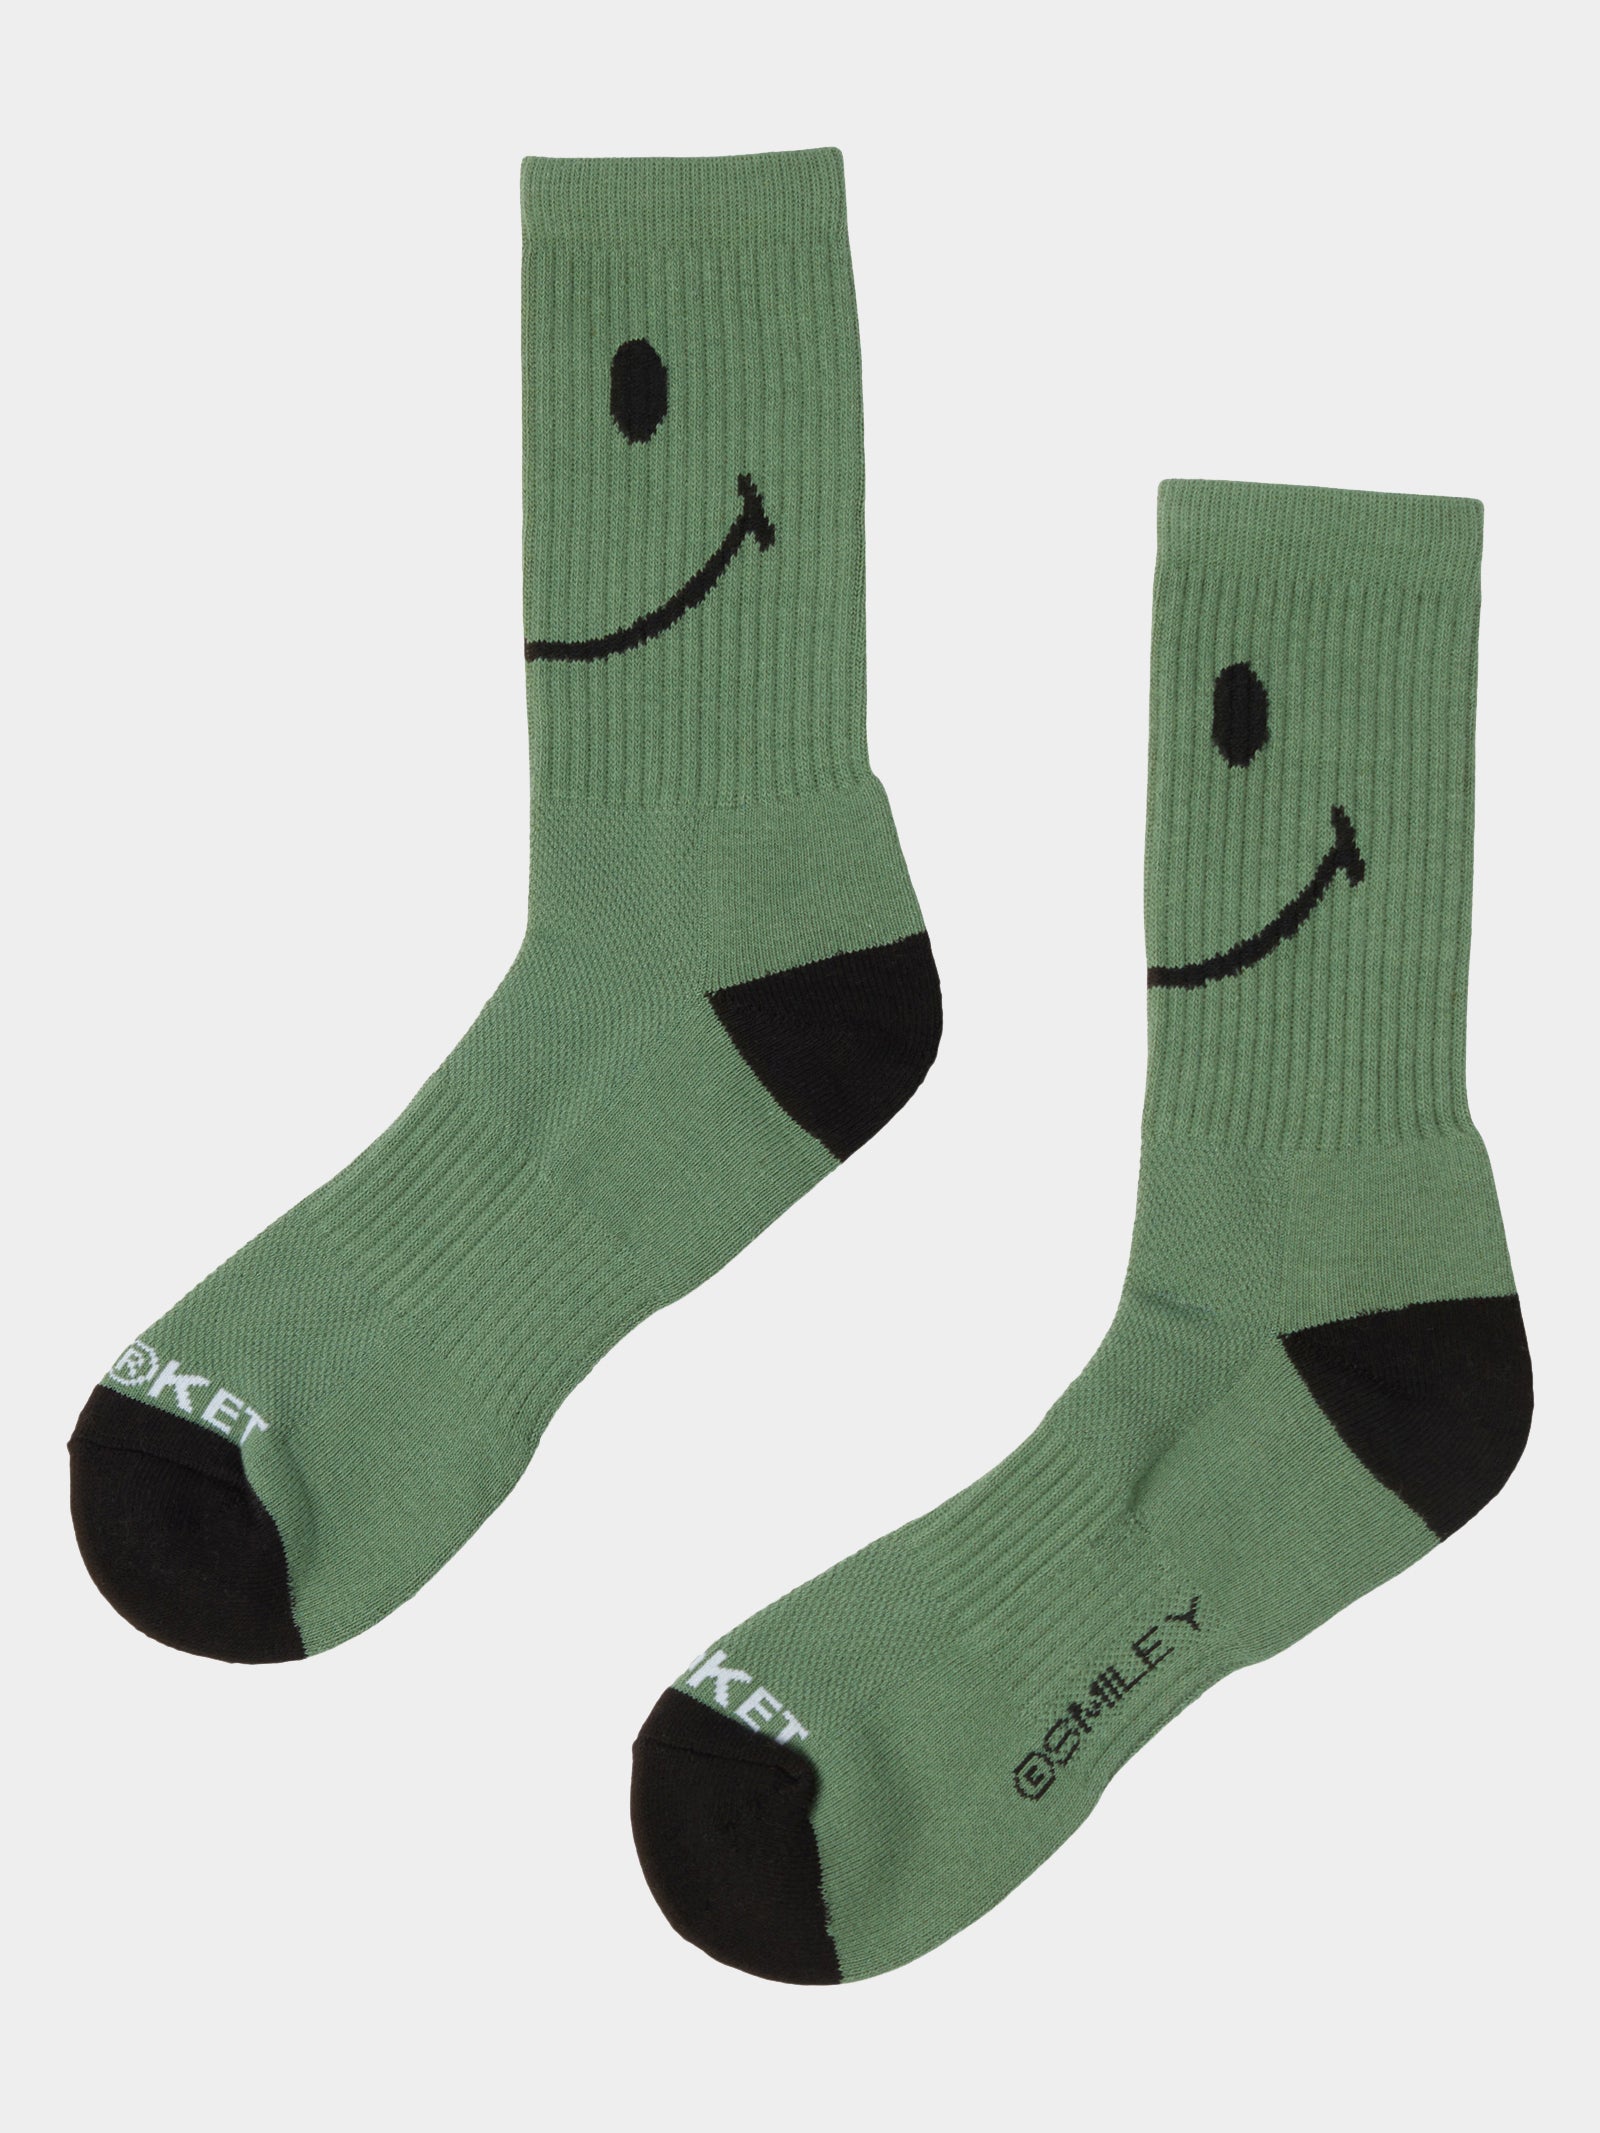 1 Pair of Smiley Crew Socks in Sage